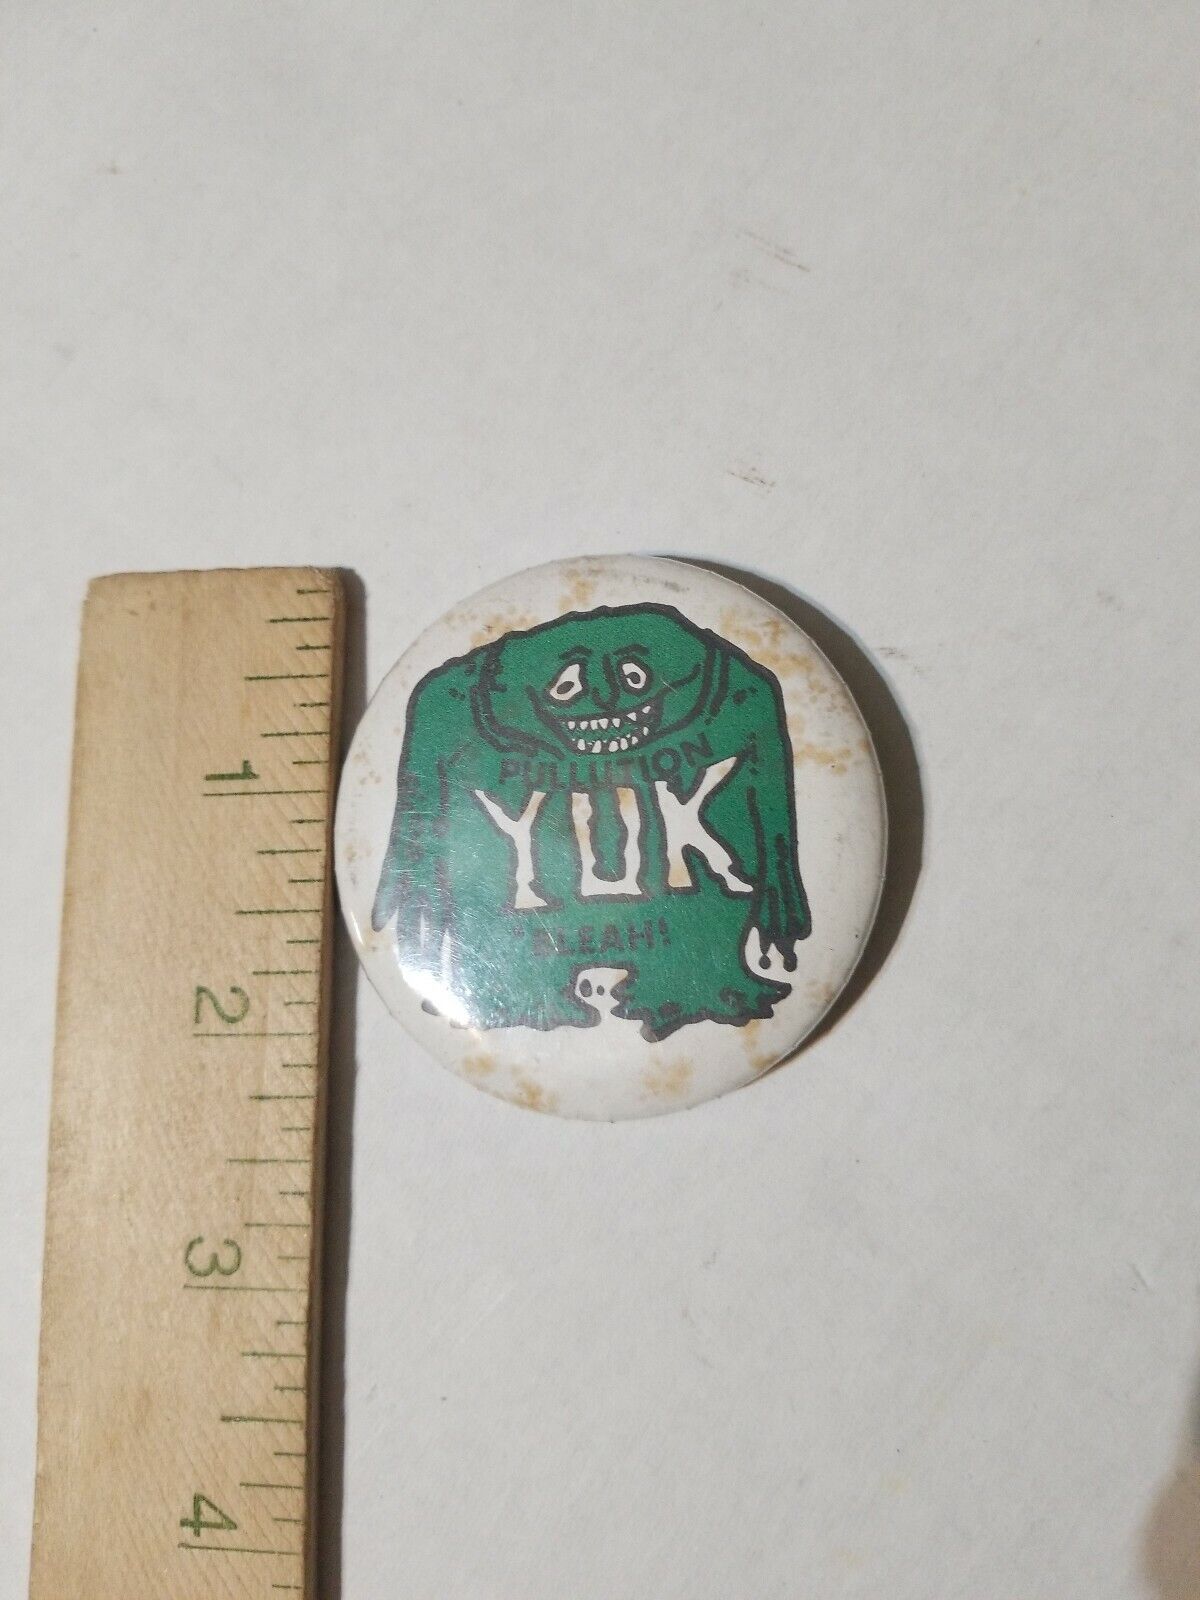 Vintage Pollution Yuck Bleah Button Pin Counterculture Hippie 